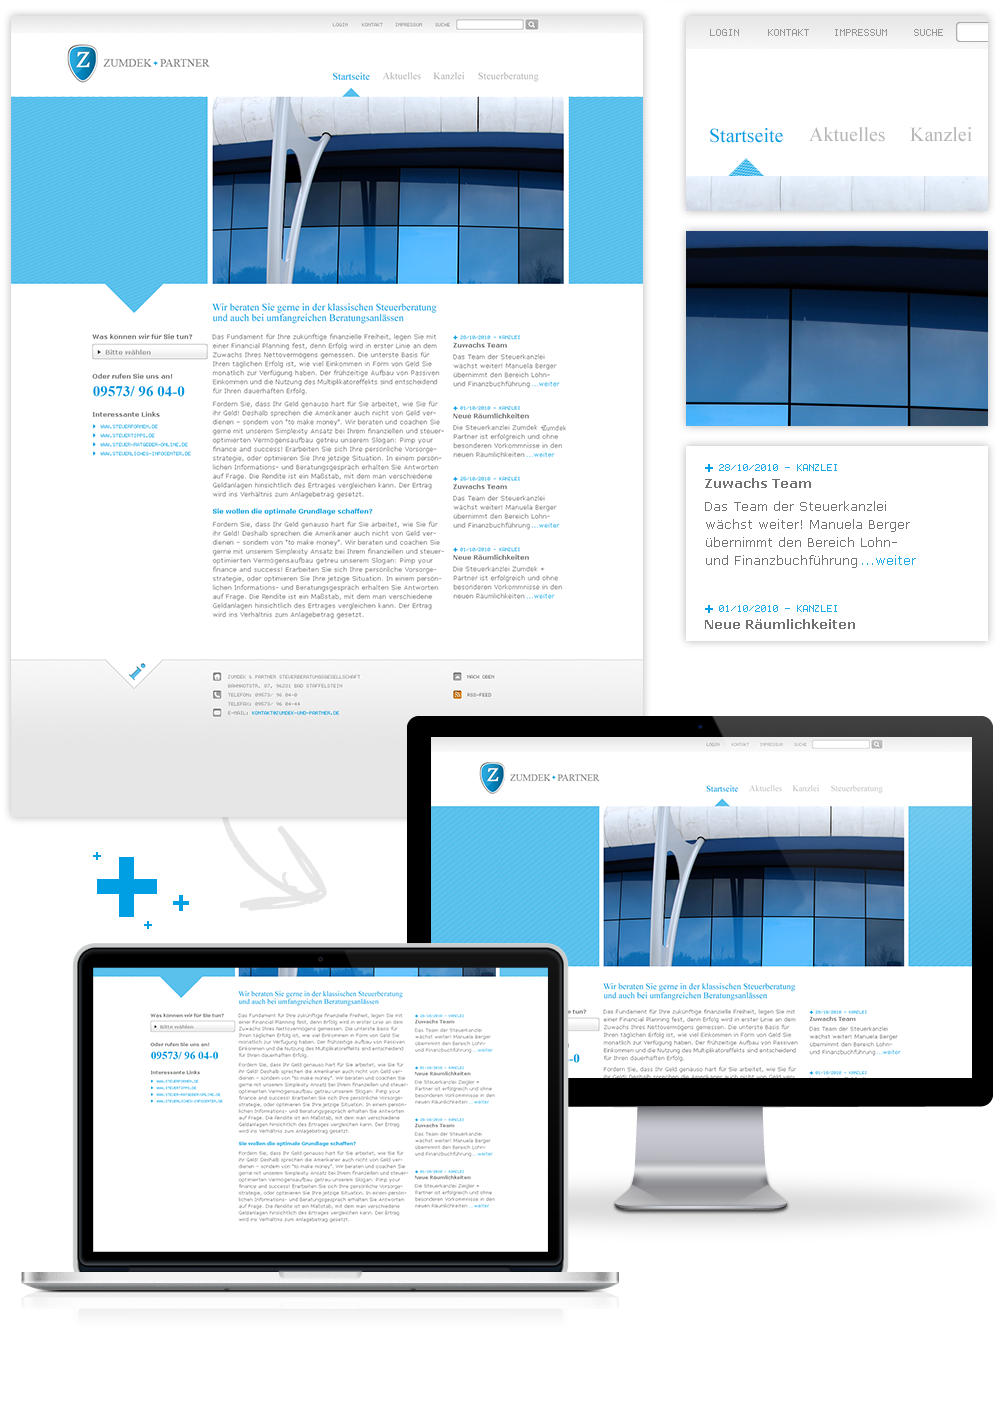 Zumdek und Partner, Corporate Design, Ansicht Startseite, Ausschnitte, Detailseite in Cinema Display und MacBook